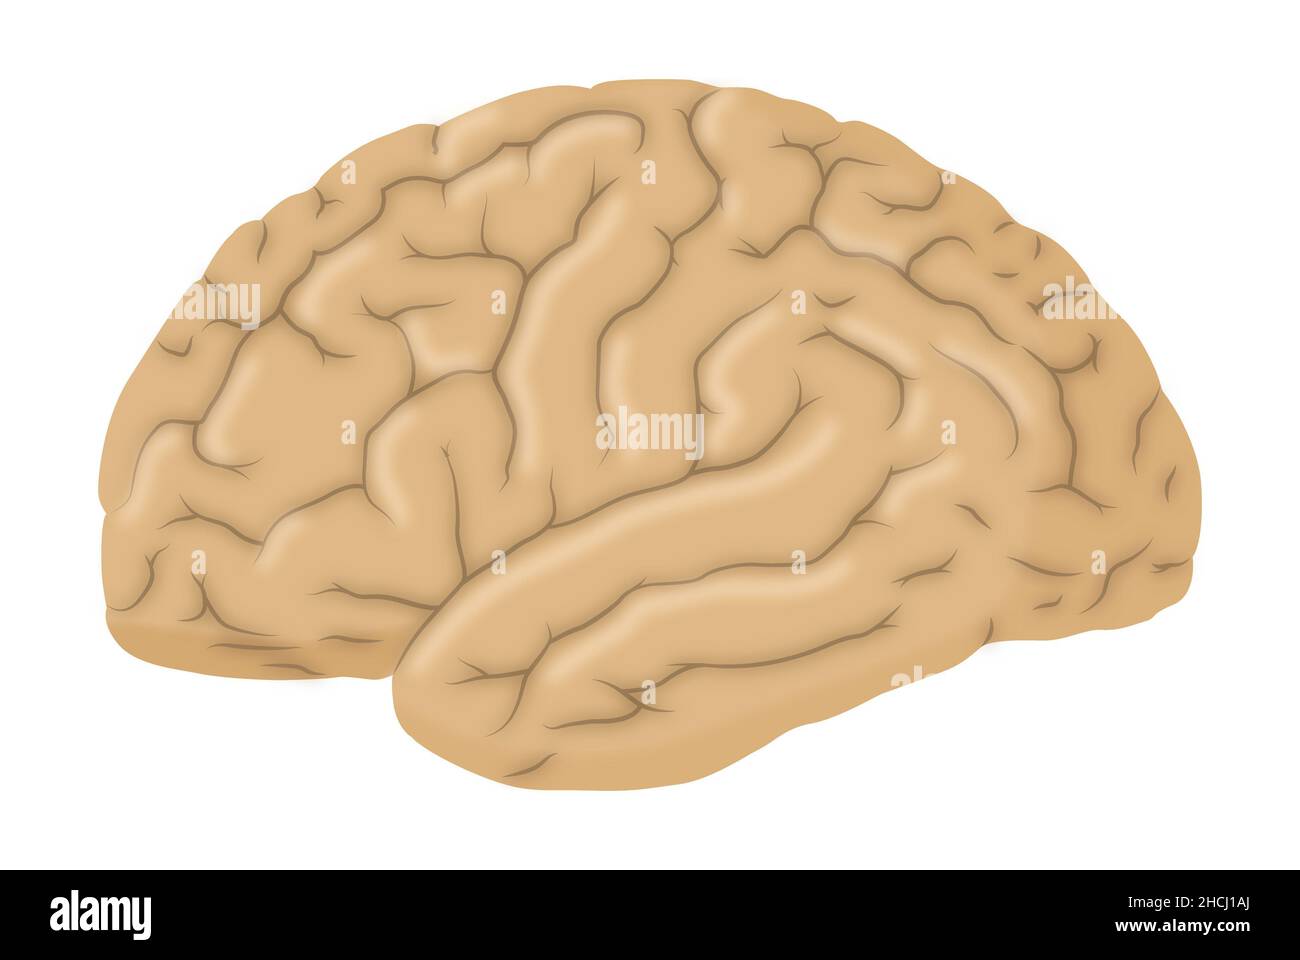 Laterale Ansicht des Gehirns Stockfoto